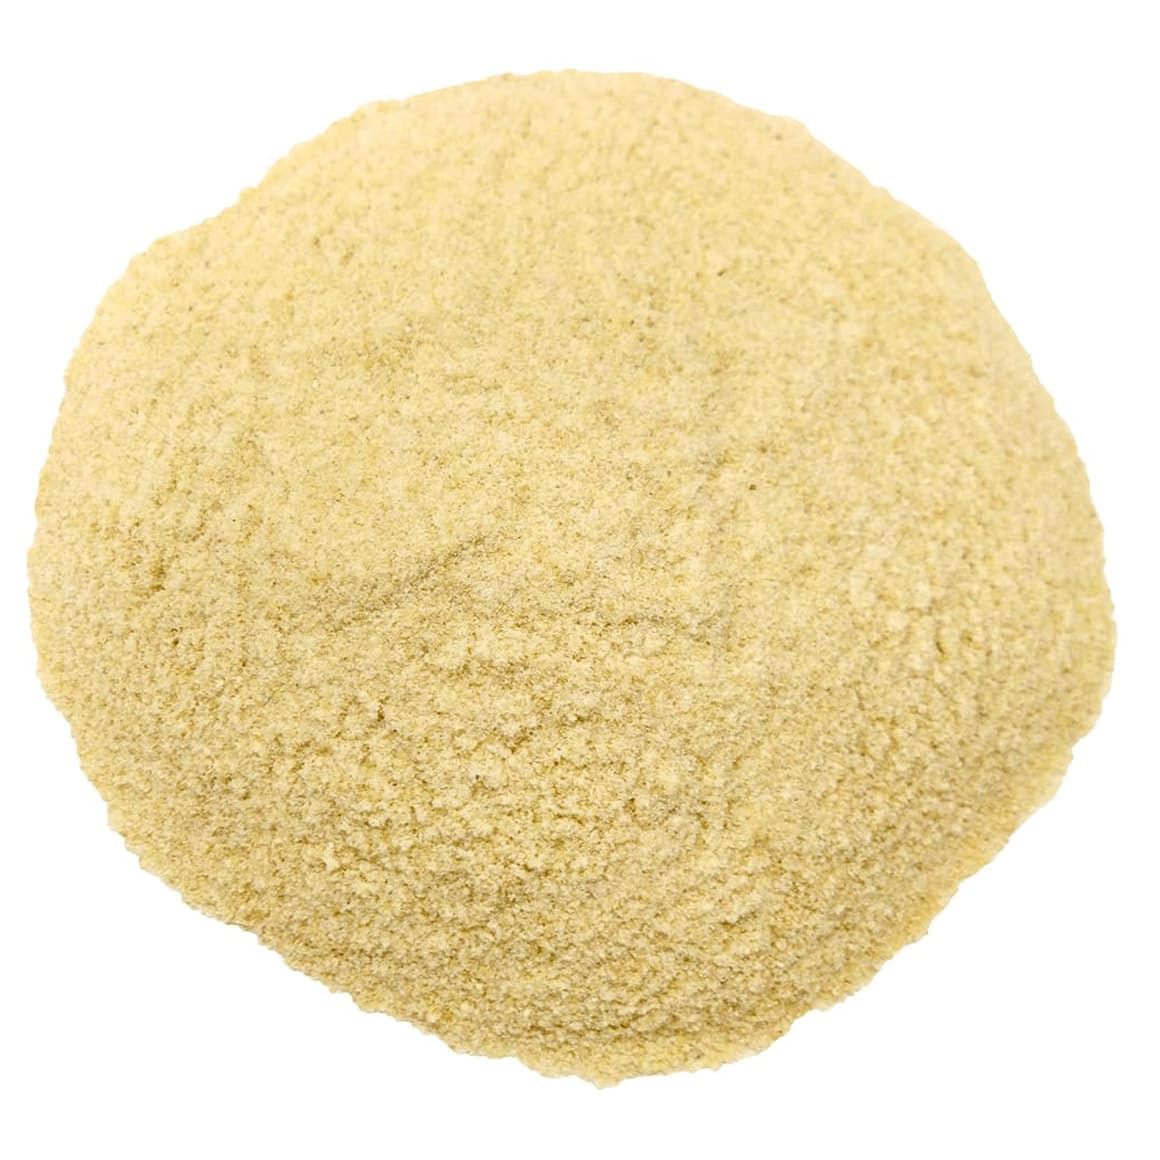 Organic KAMUT Khorasan Wheat Flour